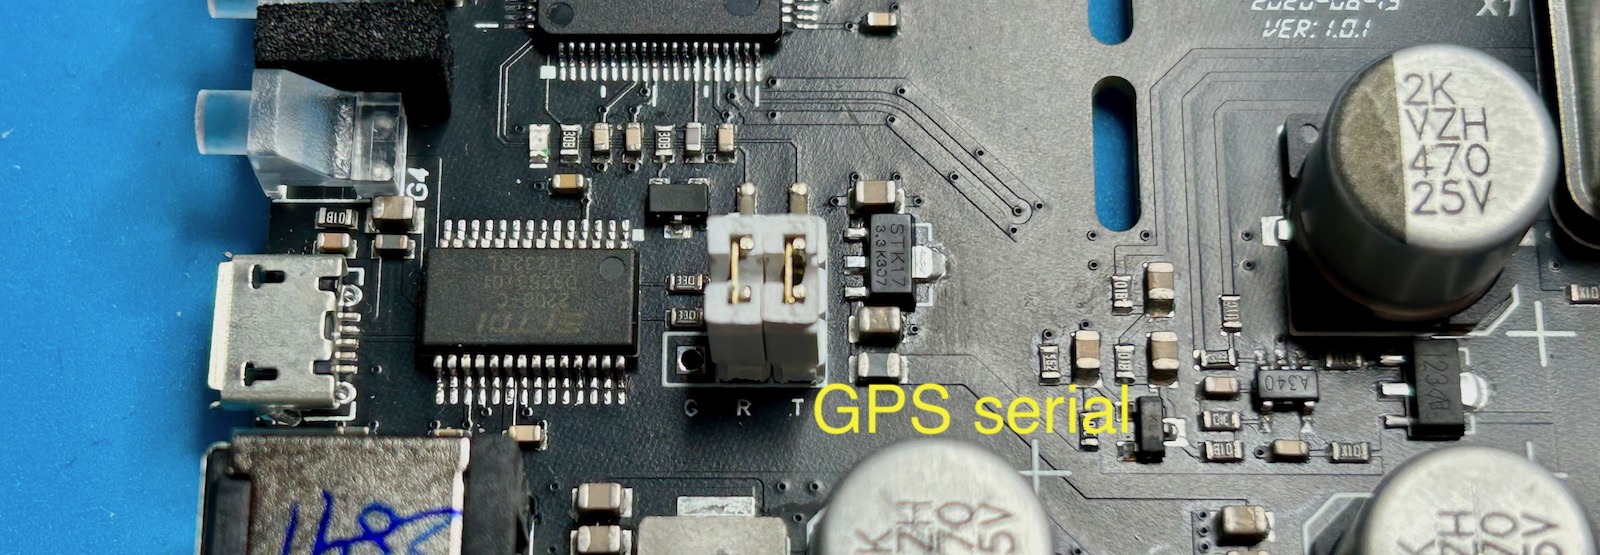 TM4313 GPS serial